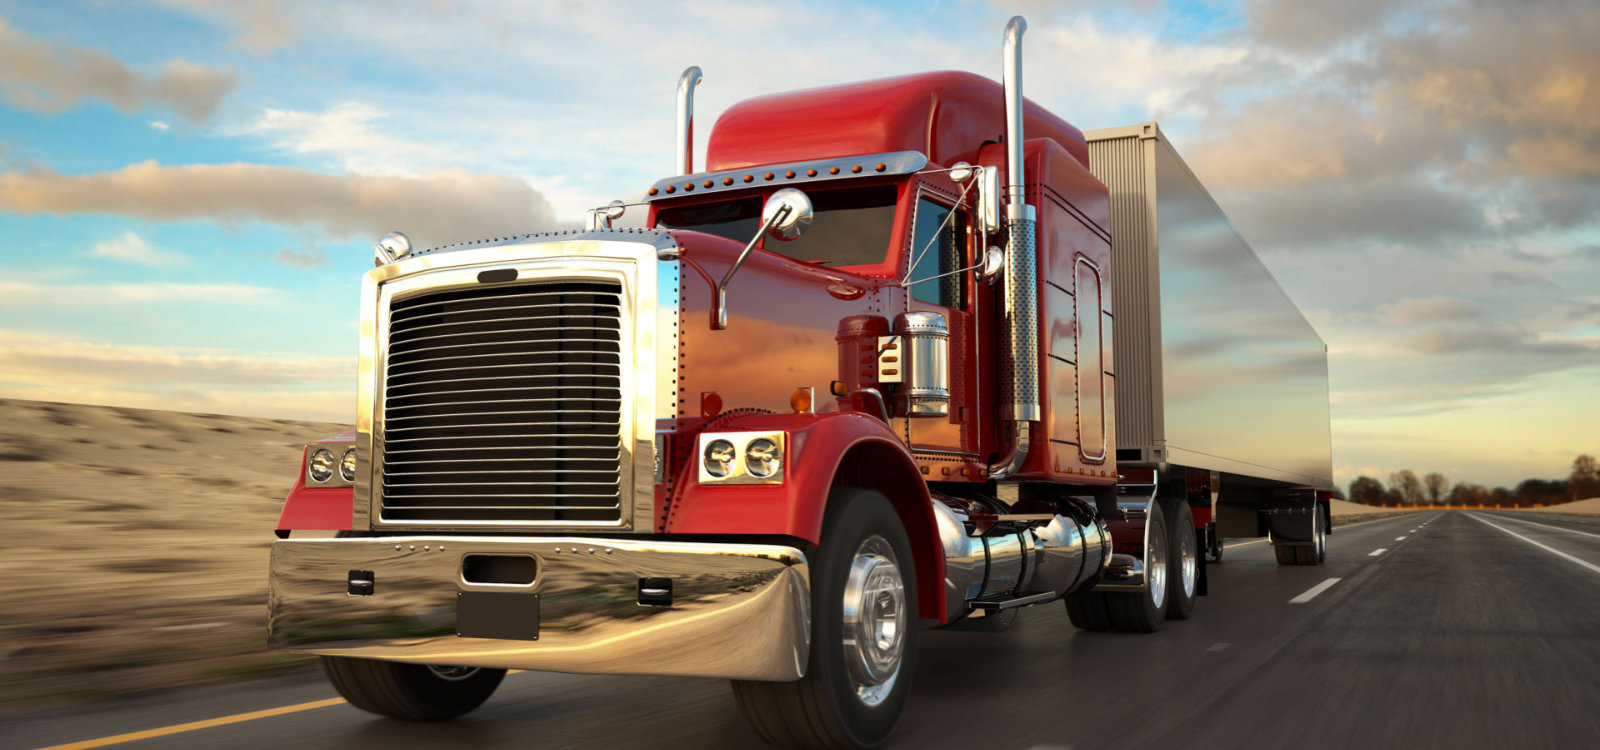 Transportation Trucking Insurance